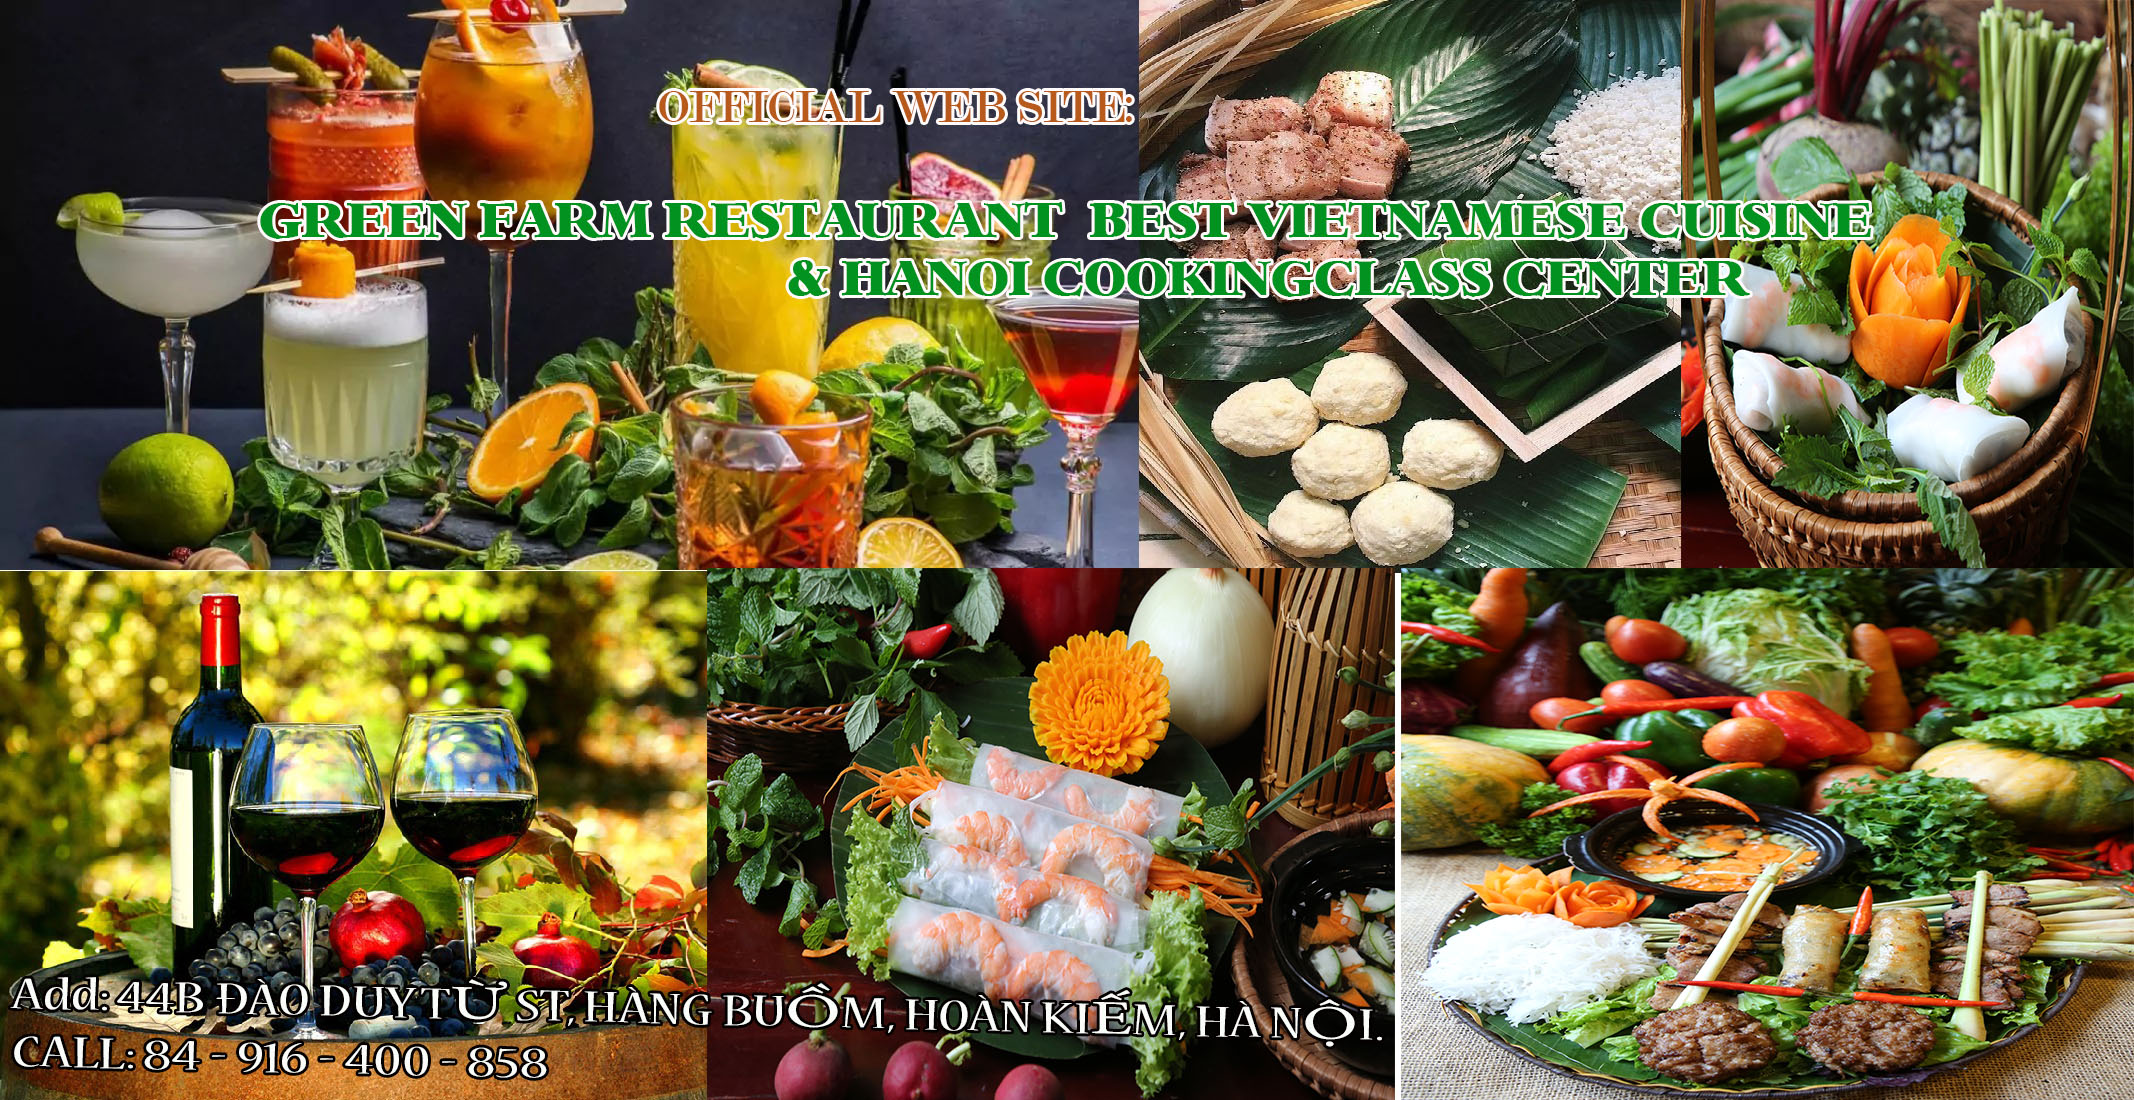 GREEN FARM RESTAURANT BEST VIETNAMESE CUISINE & HANOI COOKINGCLASS CENTER